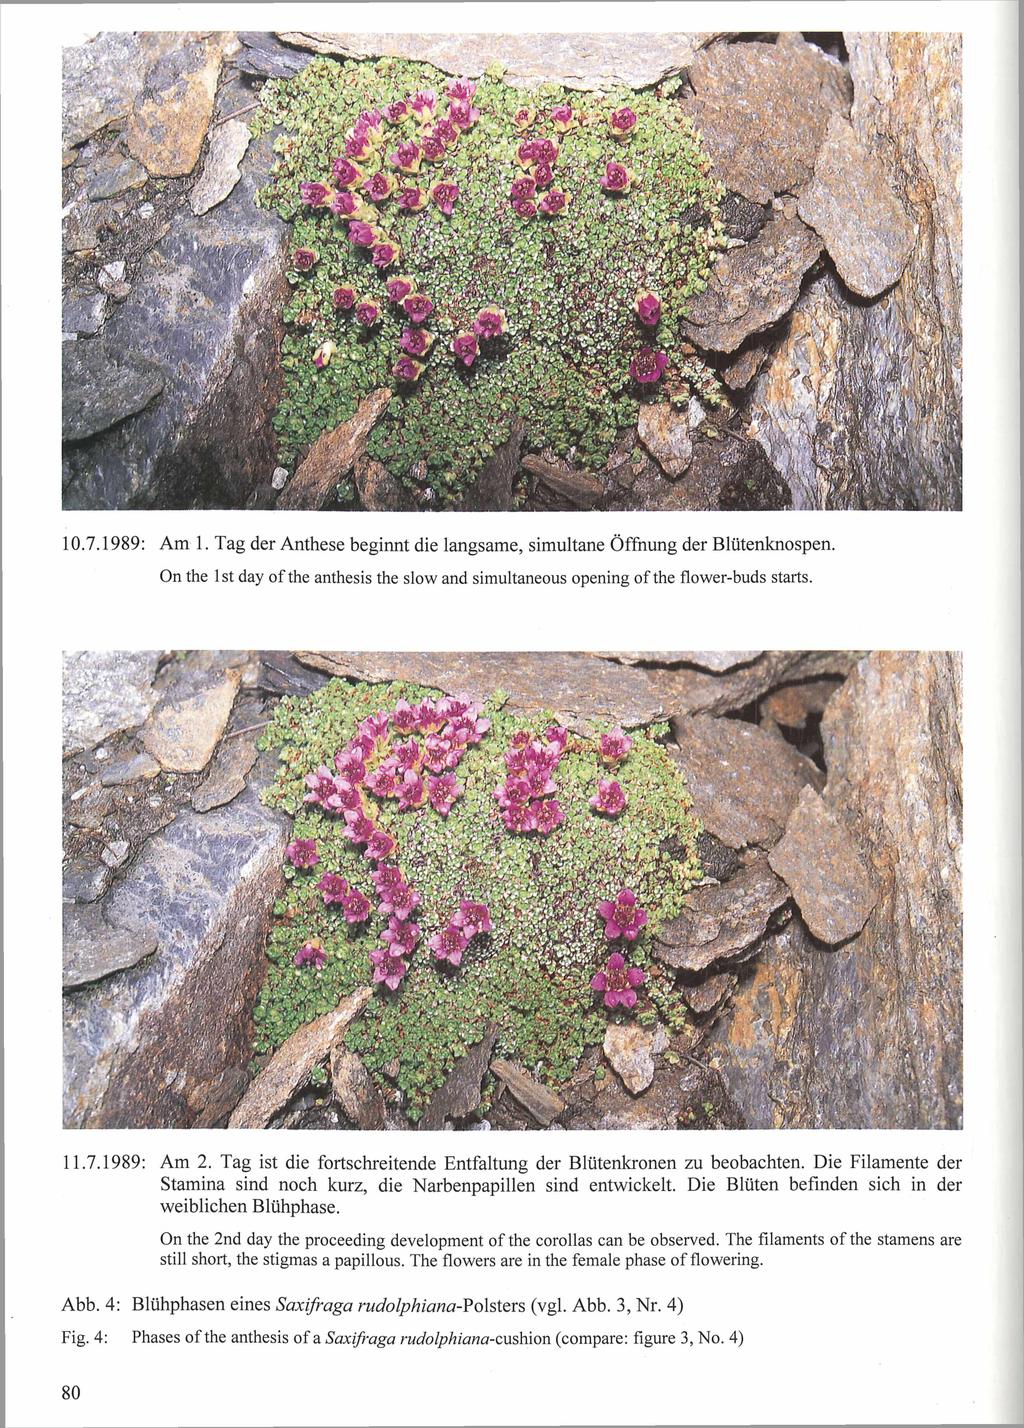 Nationalpark Hohe Tauern, download unter www.biologiezentrum.at 10.7.1989: Am 1. Tag der Anthese beginnt die langsame, simultane Öffnung der Blütenknospen.